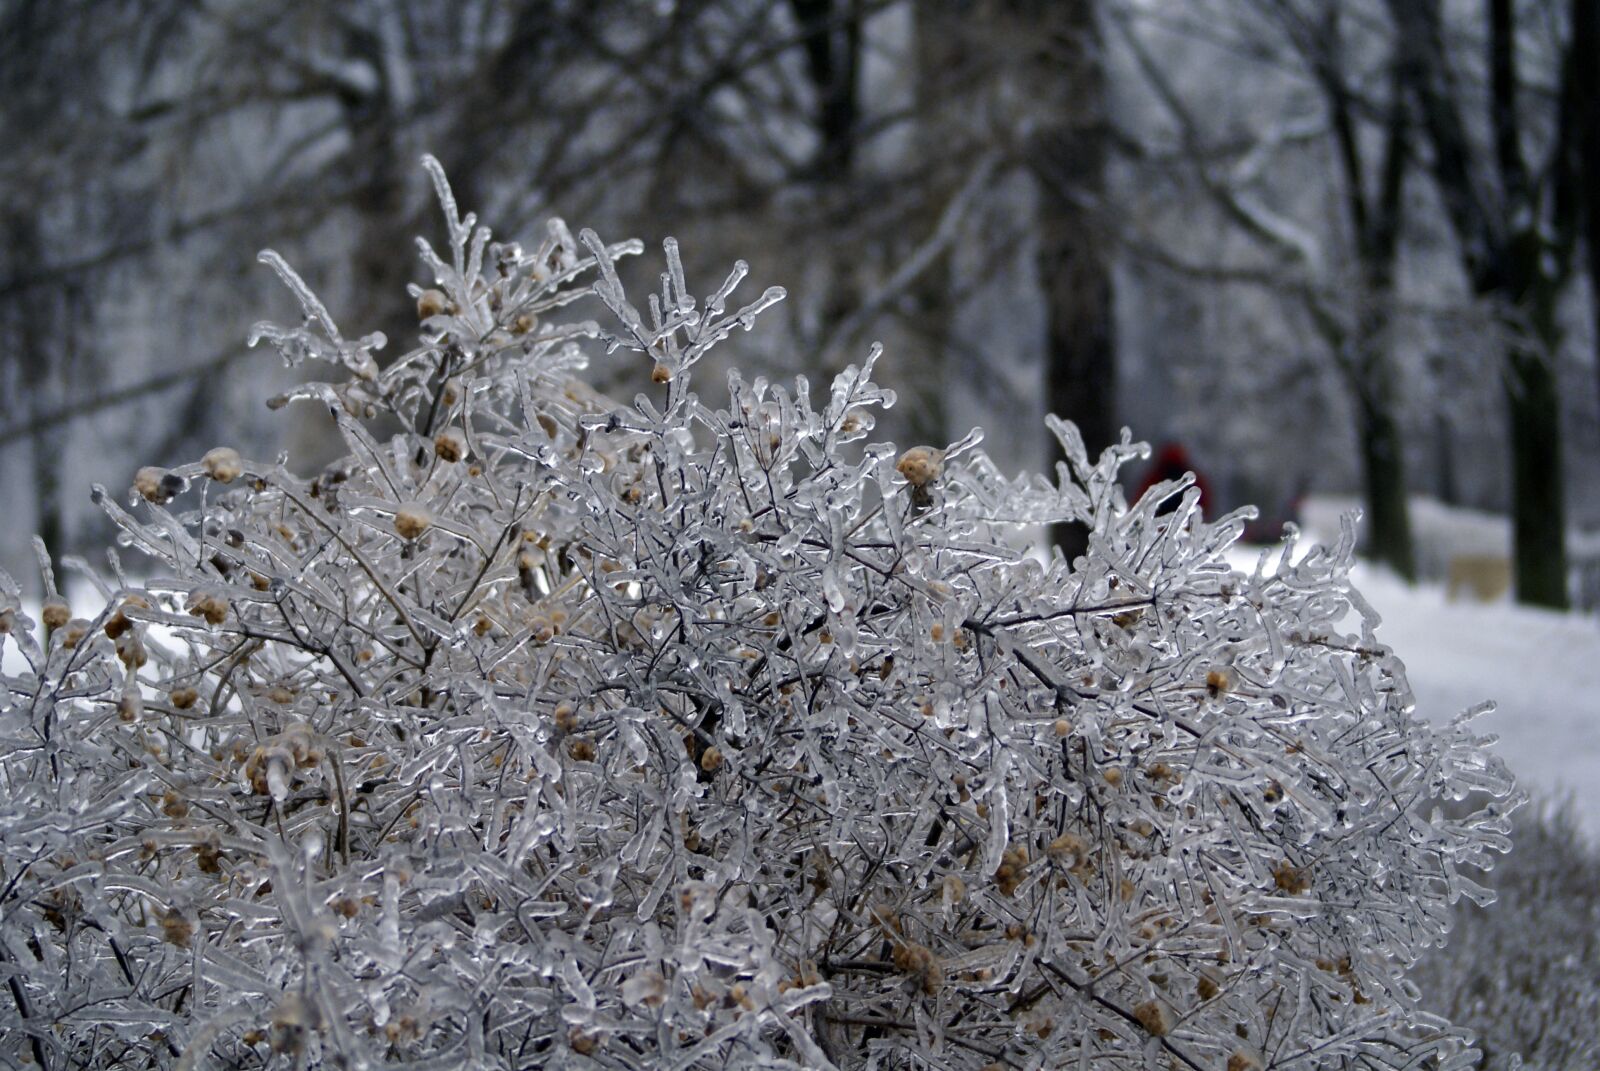 Sony Alpha DSLR-A100 sample photo. Leann, winter, tree photography